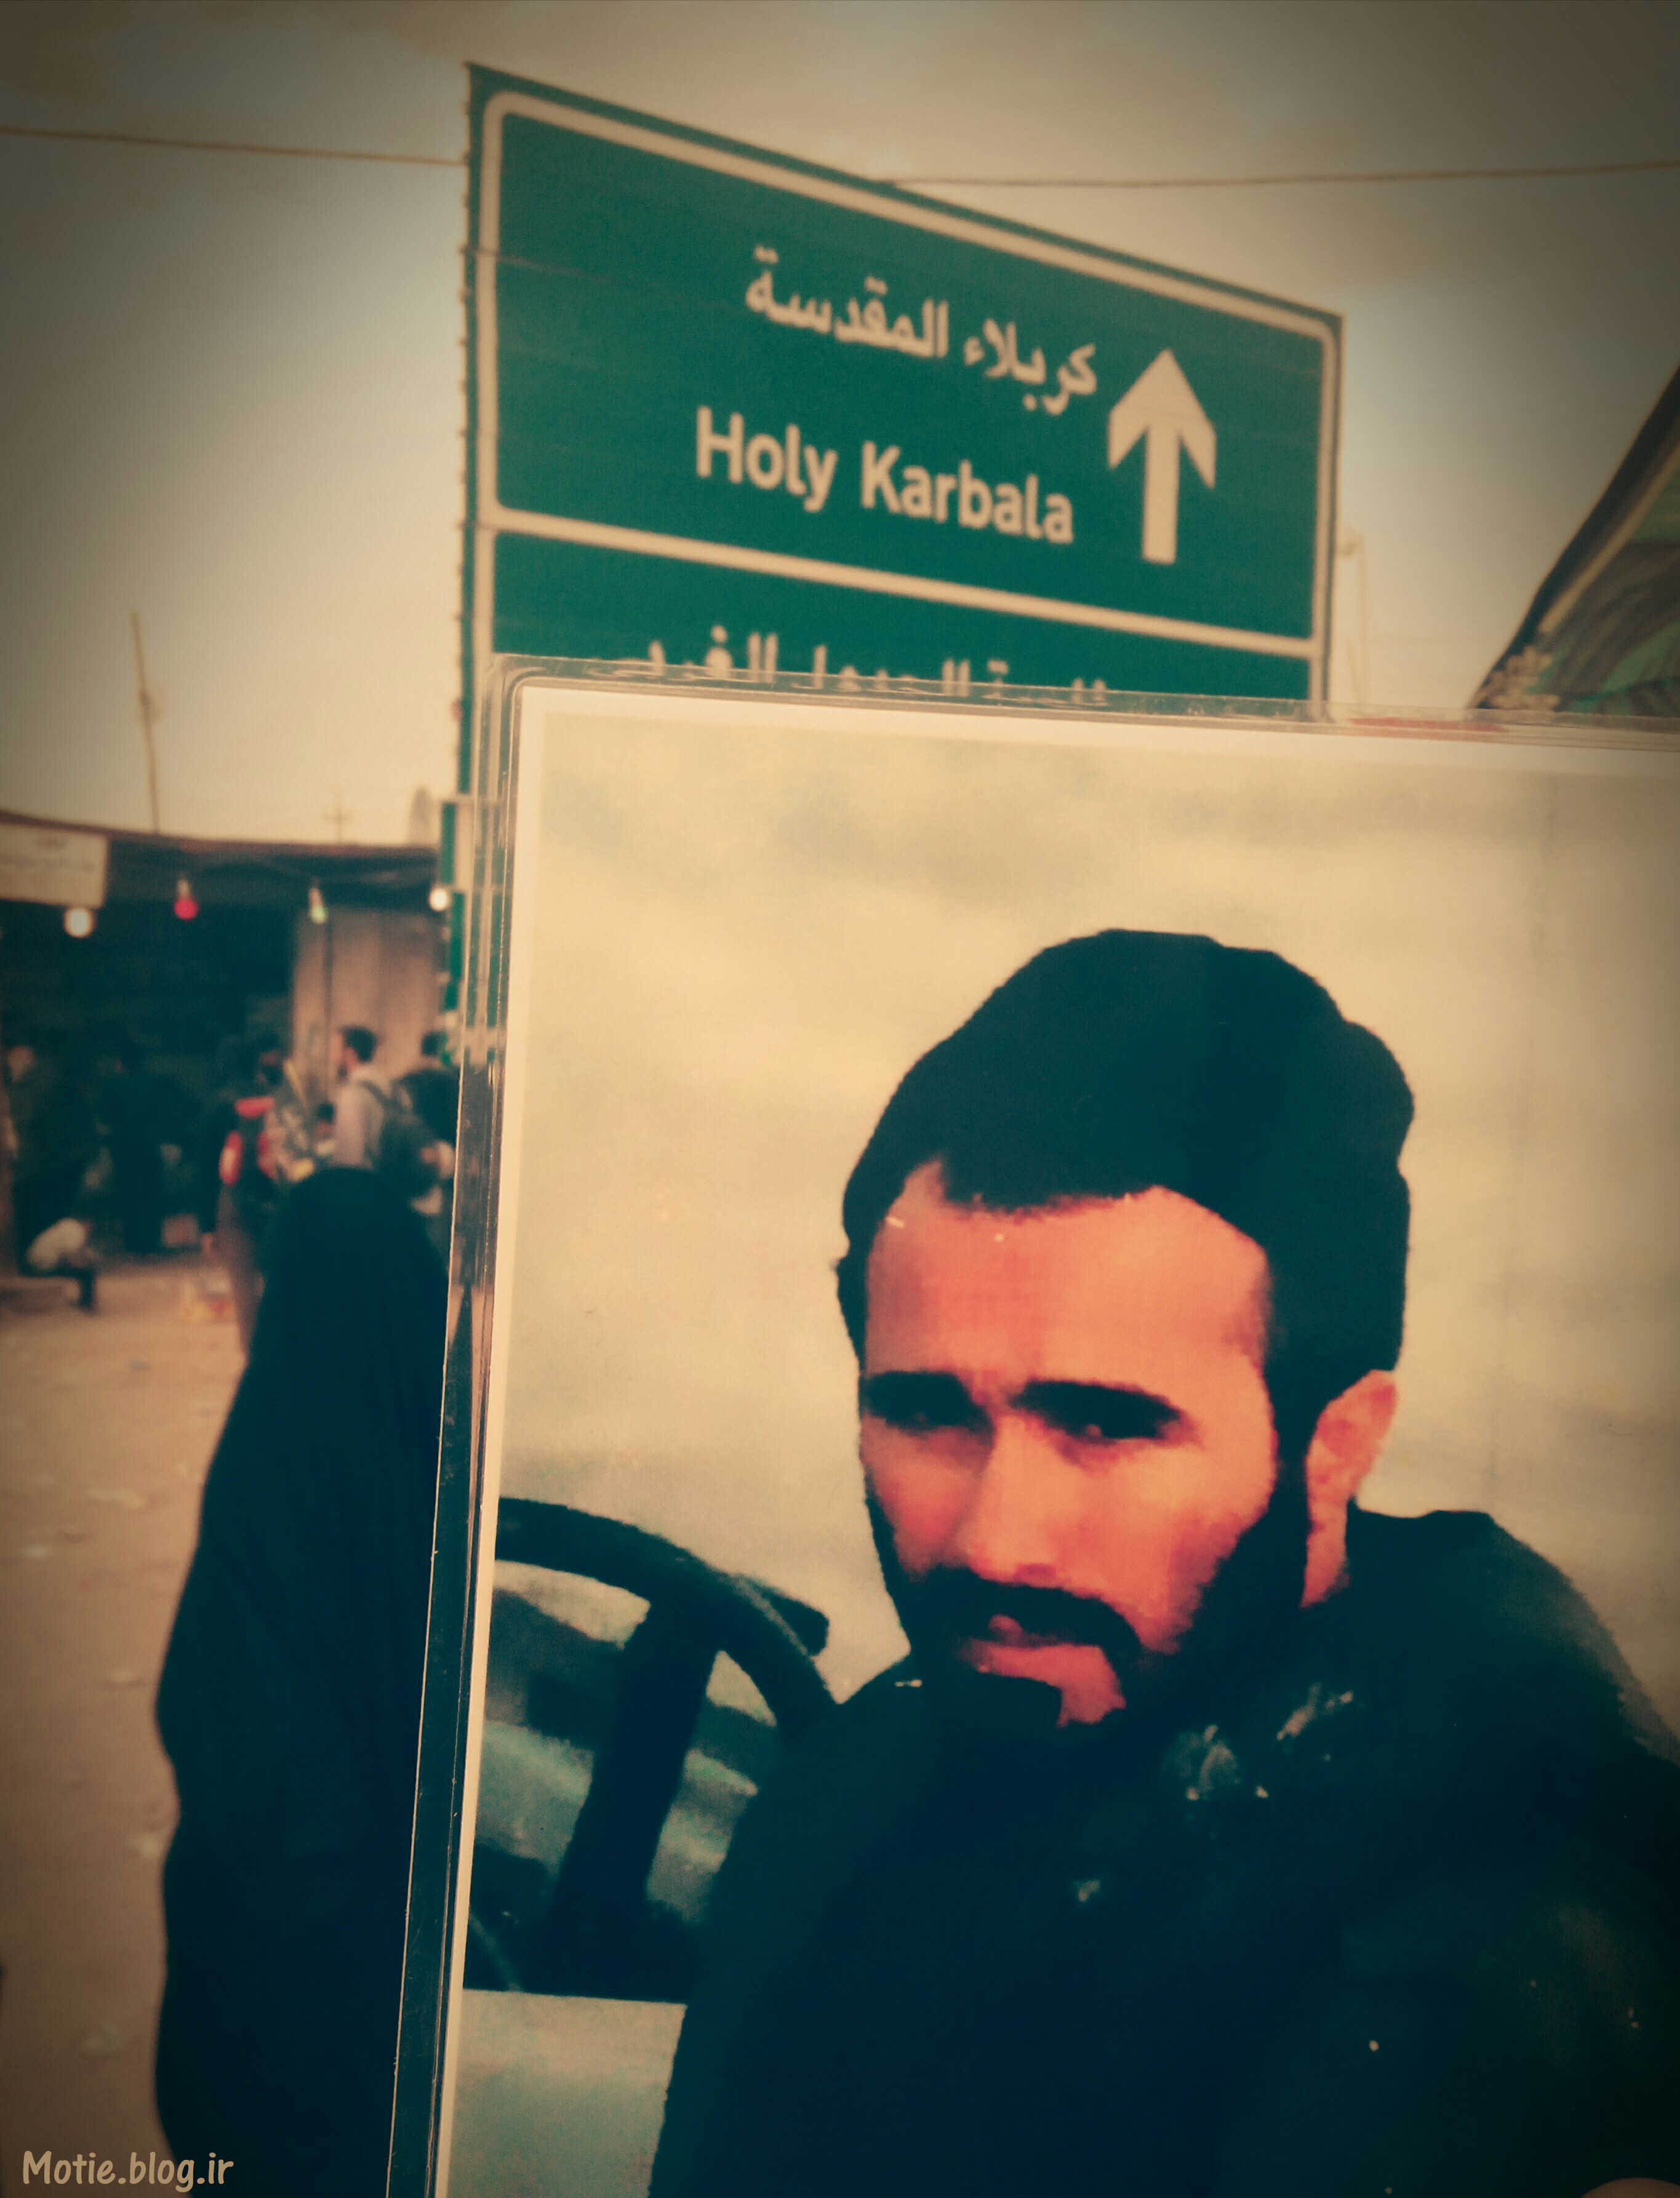 حاج حسین خرازی در پیاده روی اربعین